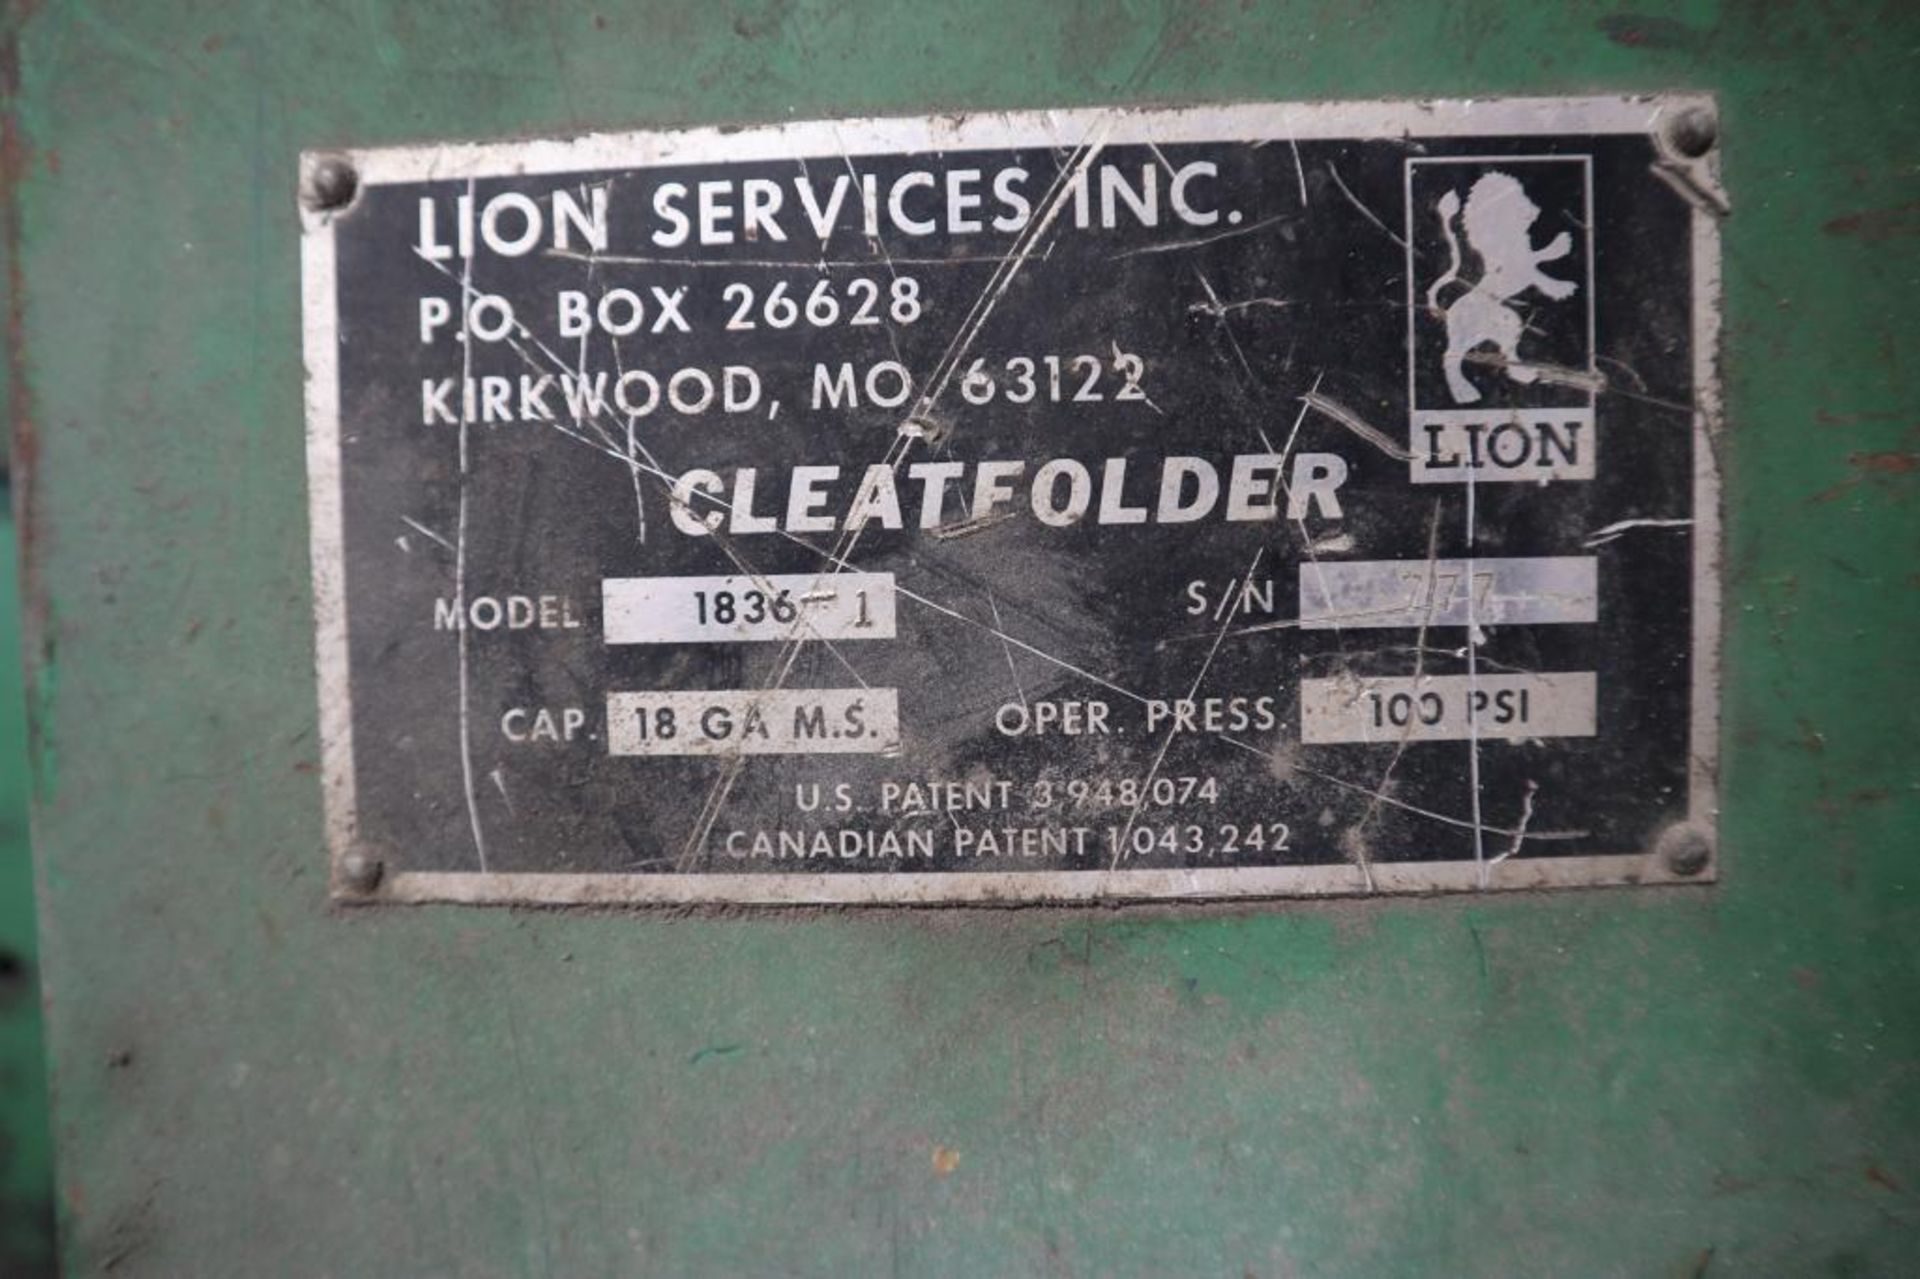 18 Ga. Lion Services Model 1836-1 Cleatfolder - Image 5 of 5